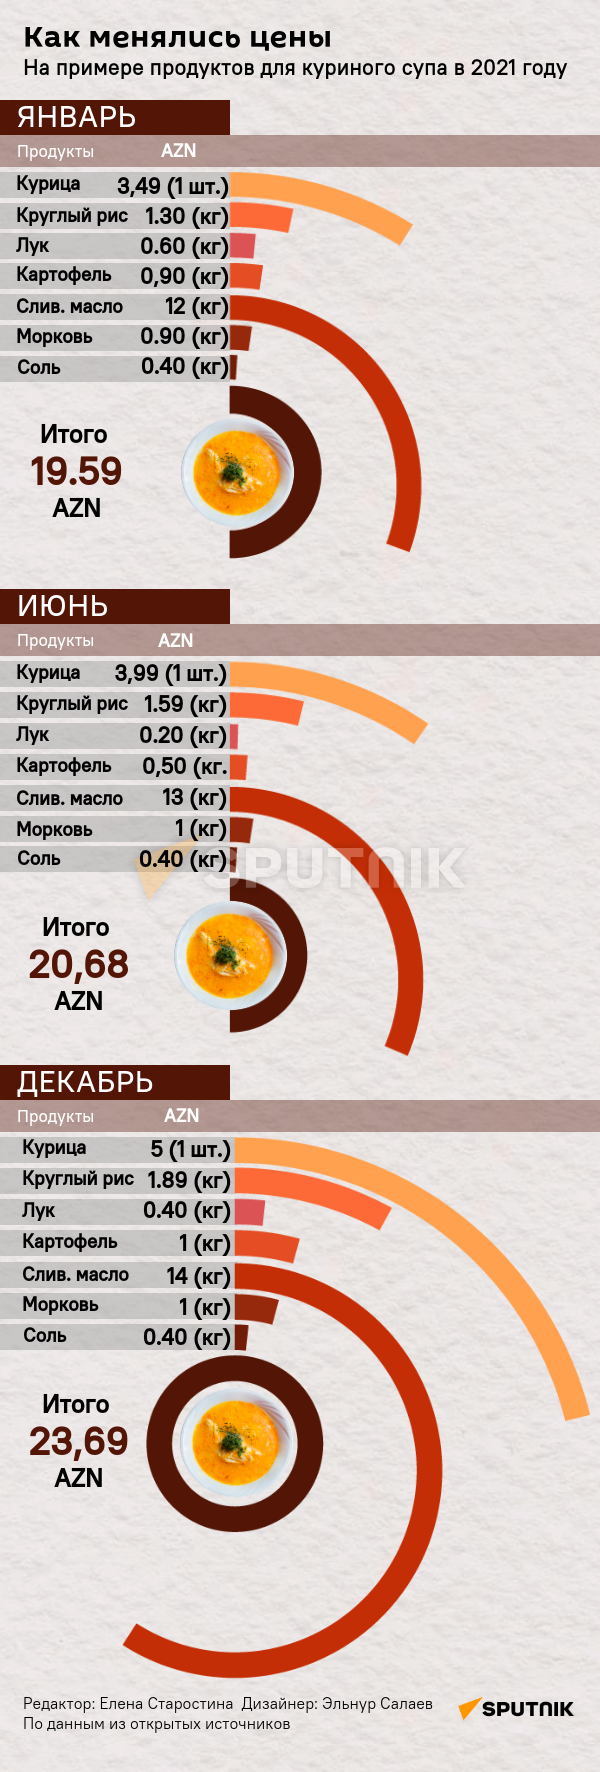 Инфографика: Как менялись цены на куринный суп - Sputnik Азербайджан